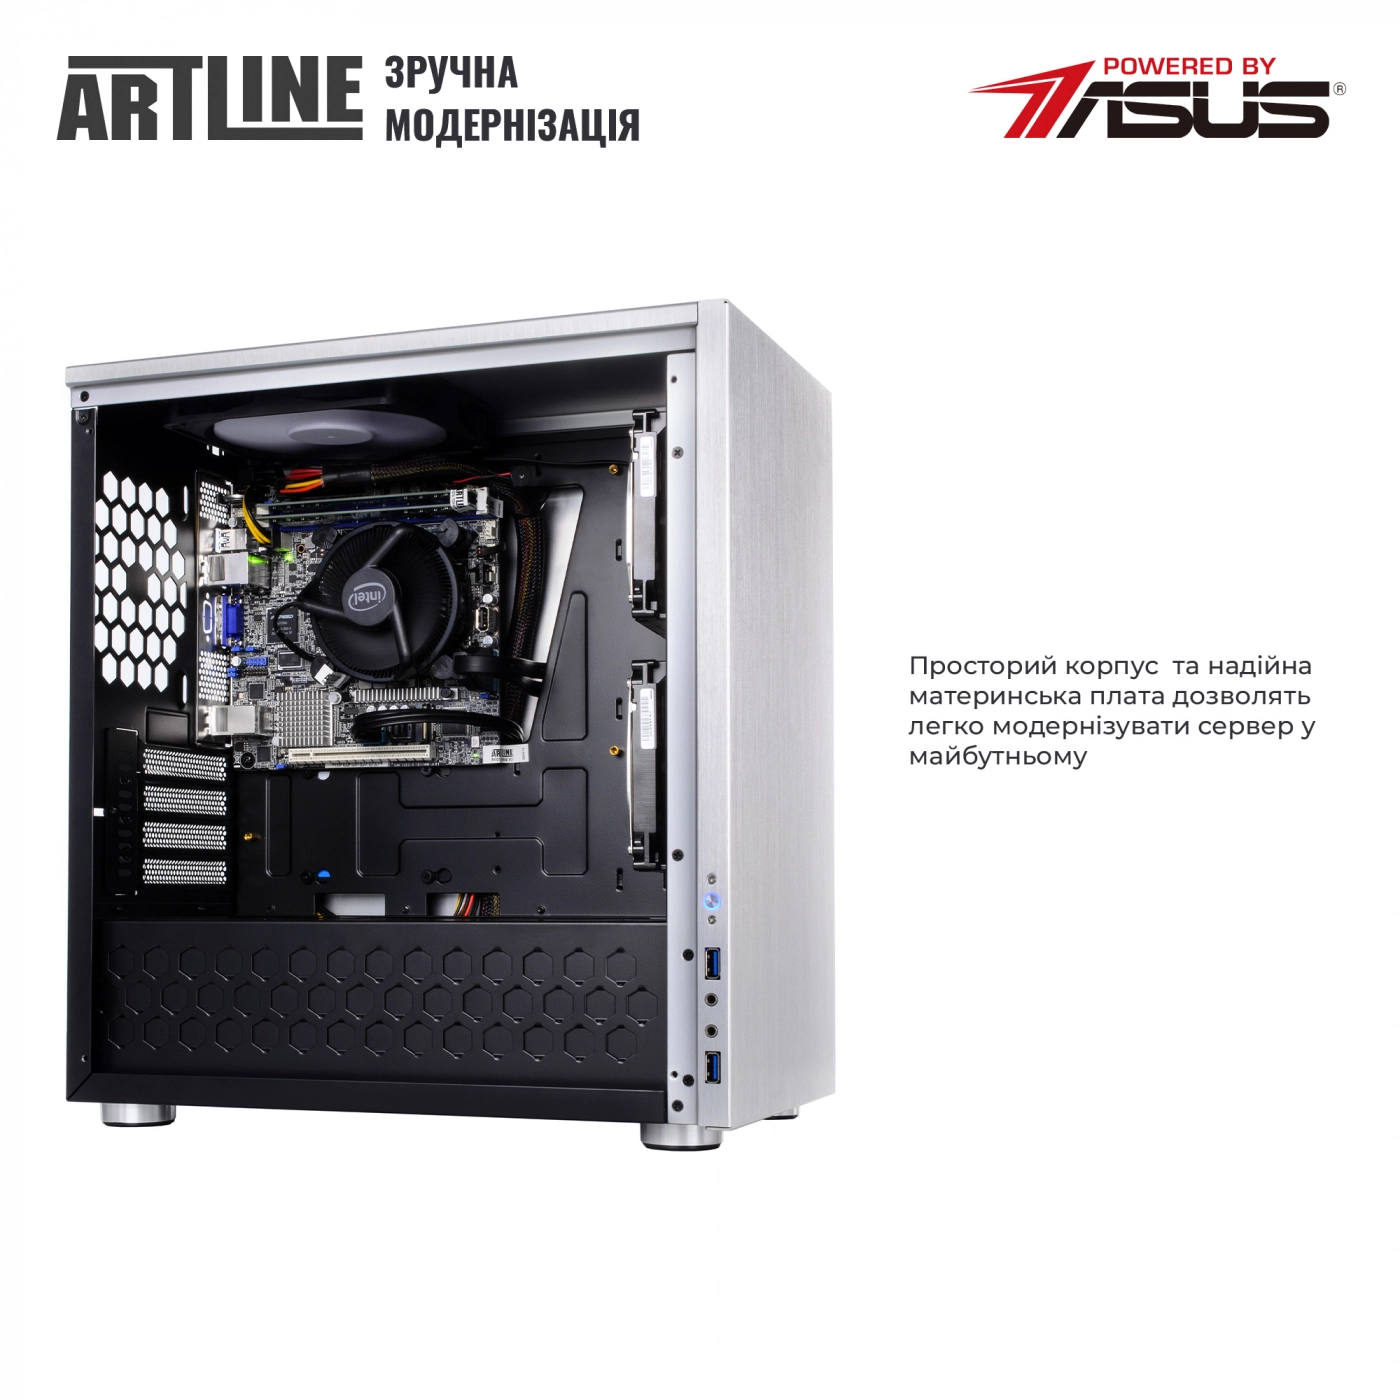 Купить Сервер ARTLINE Business T21v06 - фото 8